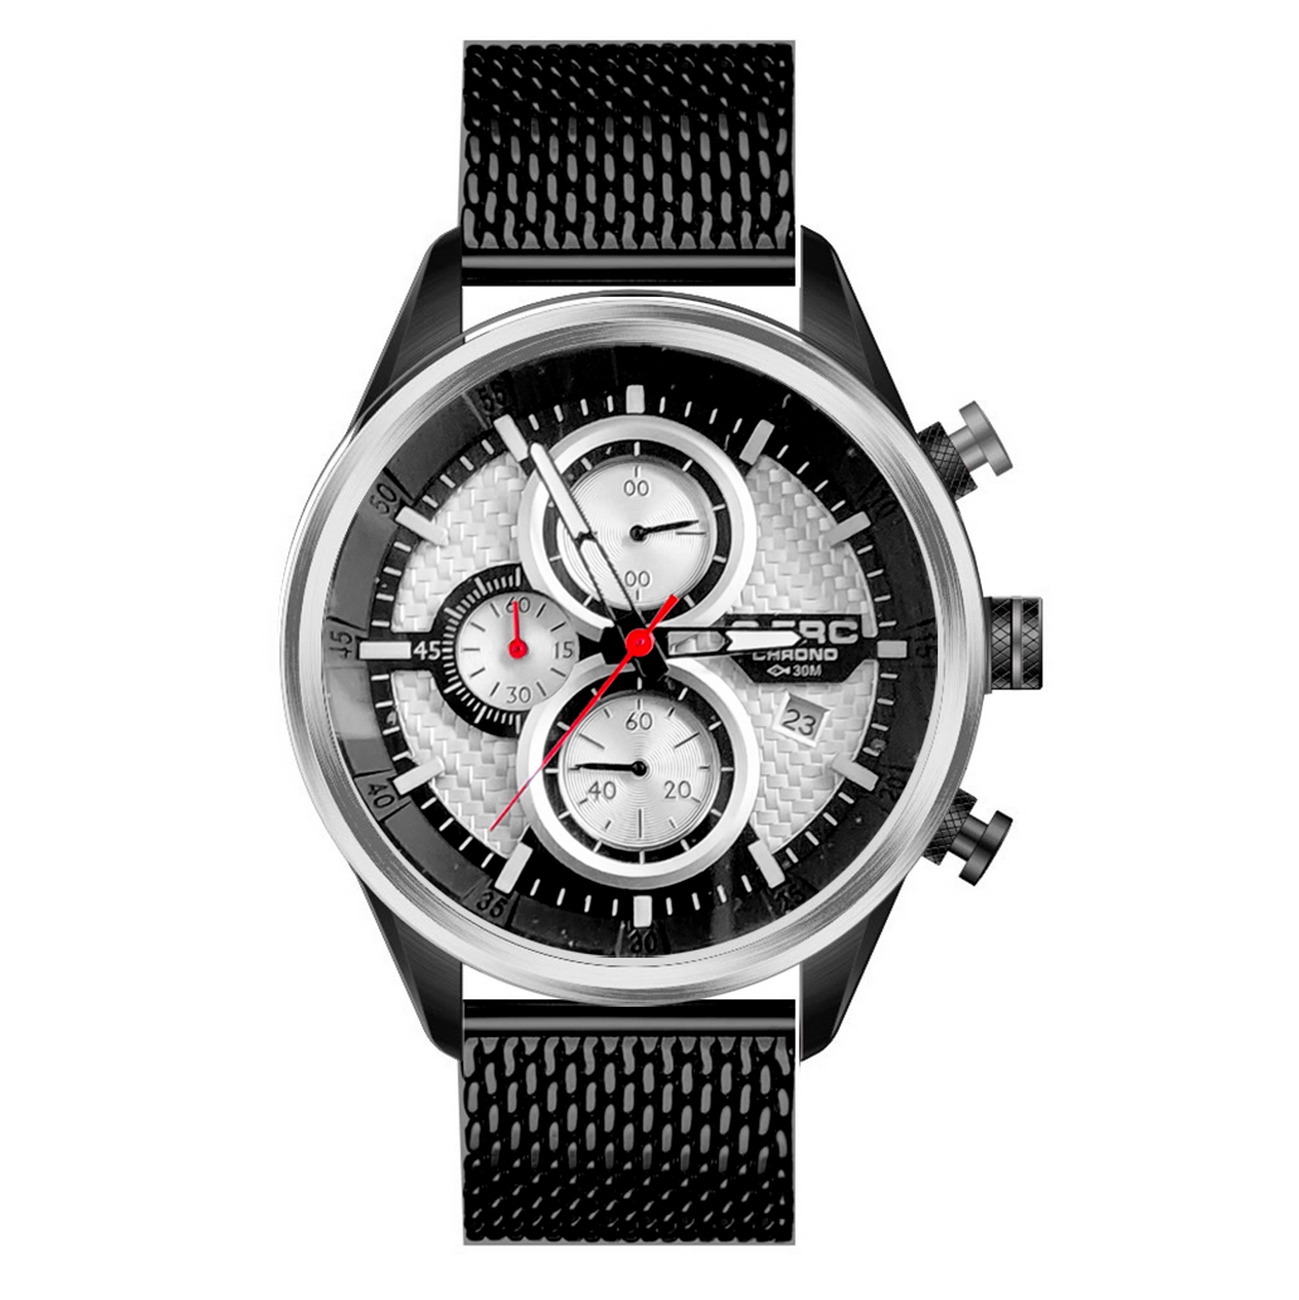 Reloj G-force Original H3775g Cronografo Hombre + Estuche